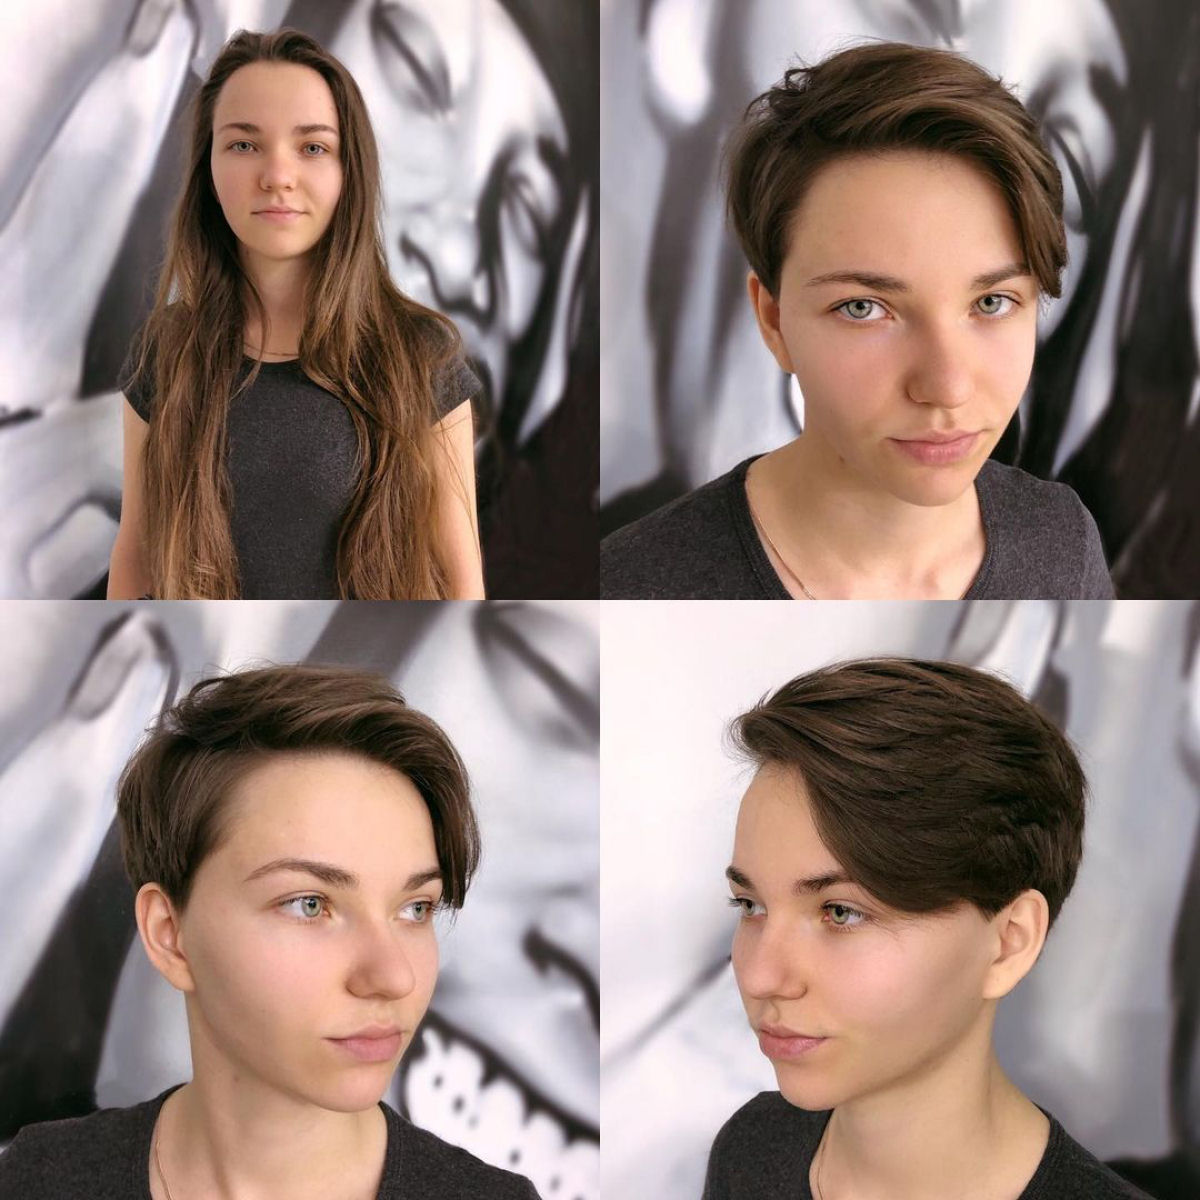 Cabeleireira moscovita demonstra que a beleza não se mede pelo comprimento do cabelo 28